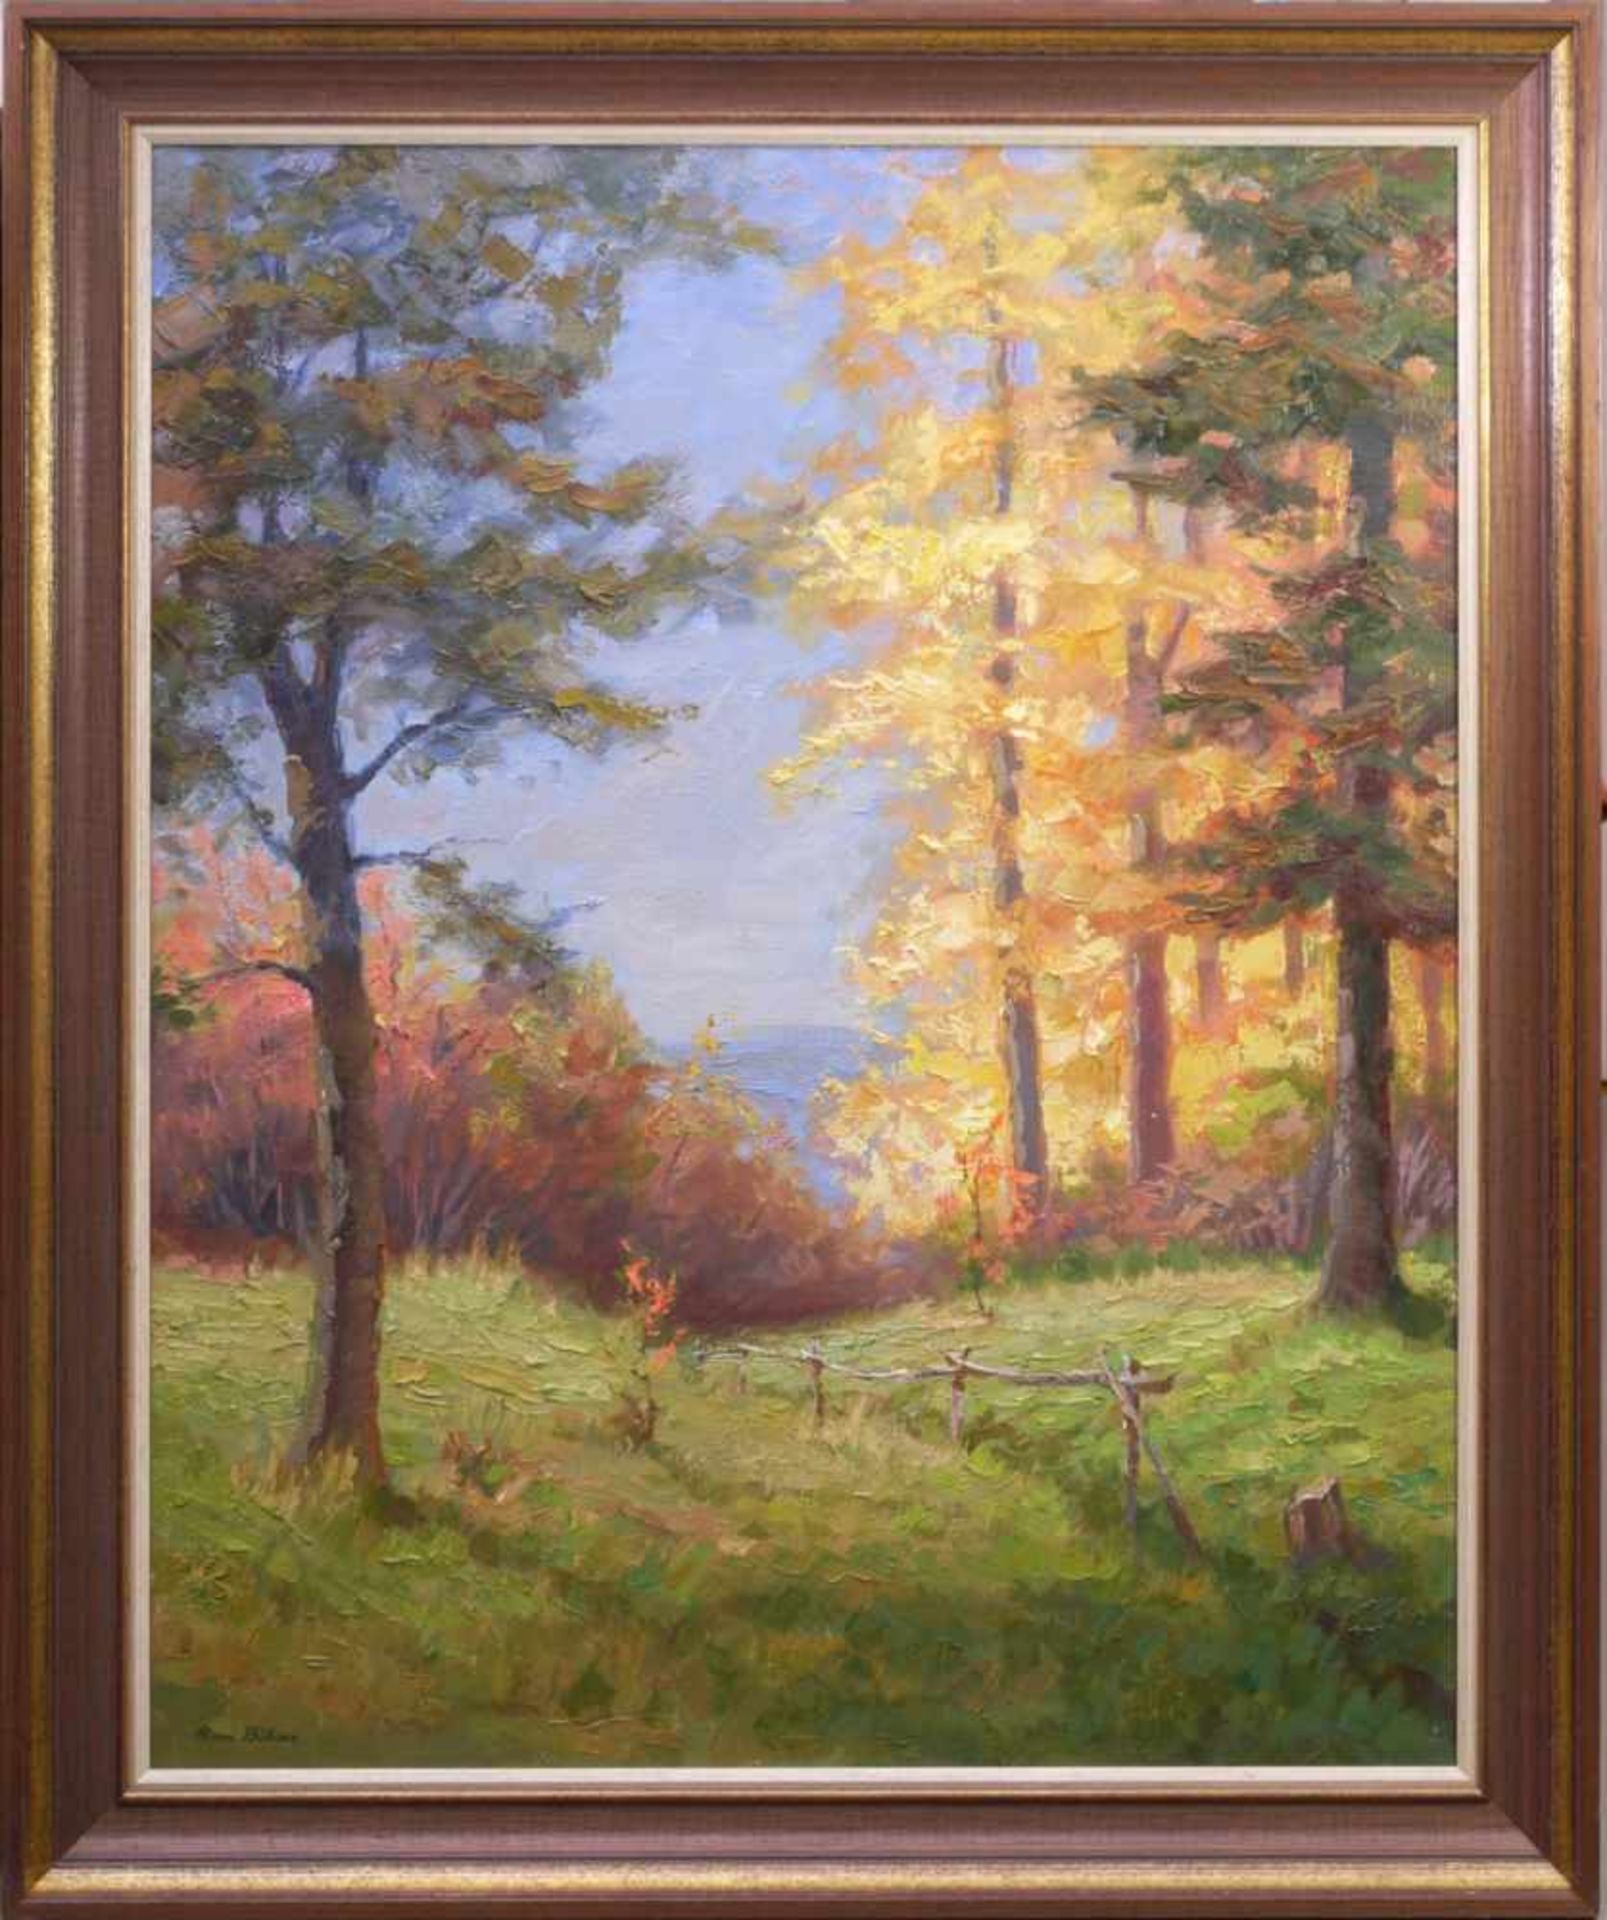 Böhme, Hans (1905-1982) - Herbstlicher LaubwaldIn golden-herbstlicher Farbpalette strahlt diese